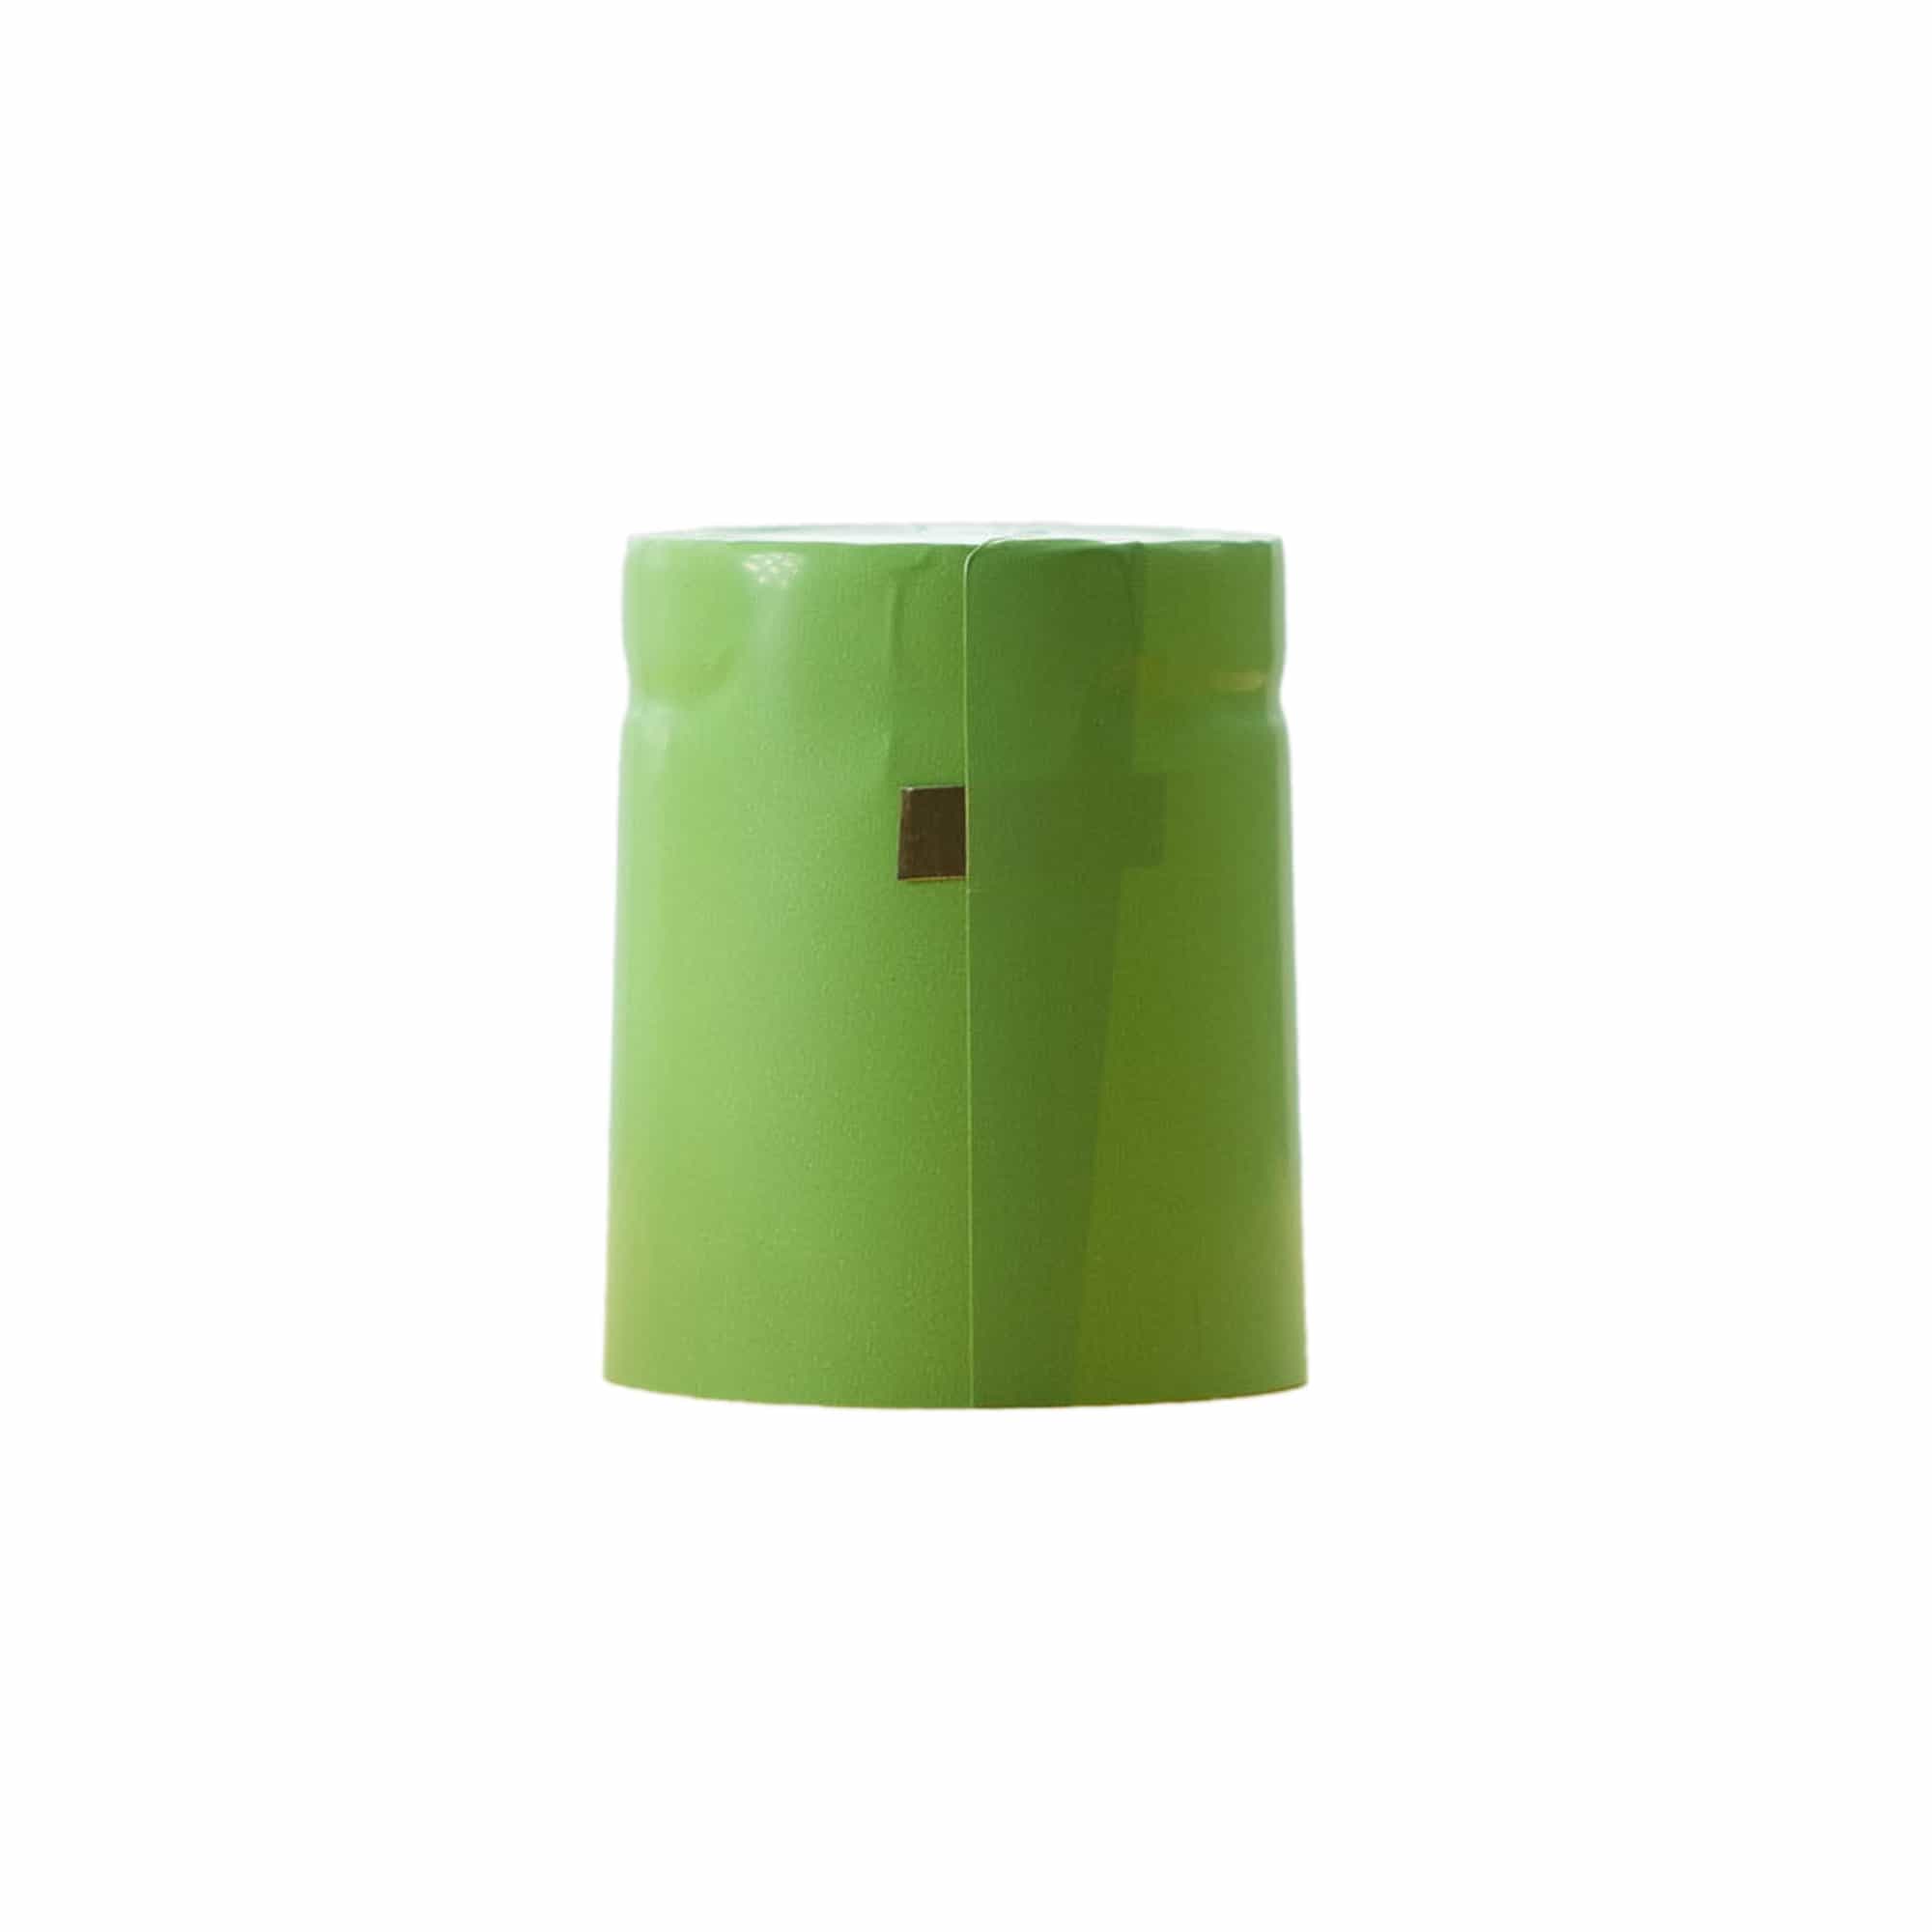 Capsula termoretraibile 32x41, plastica PVC, verde lime